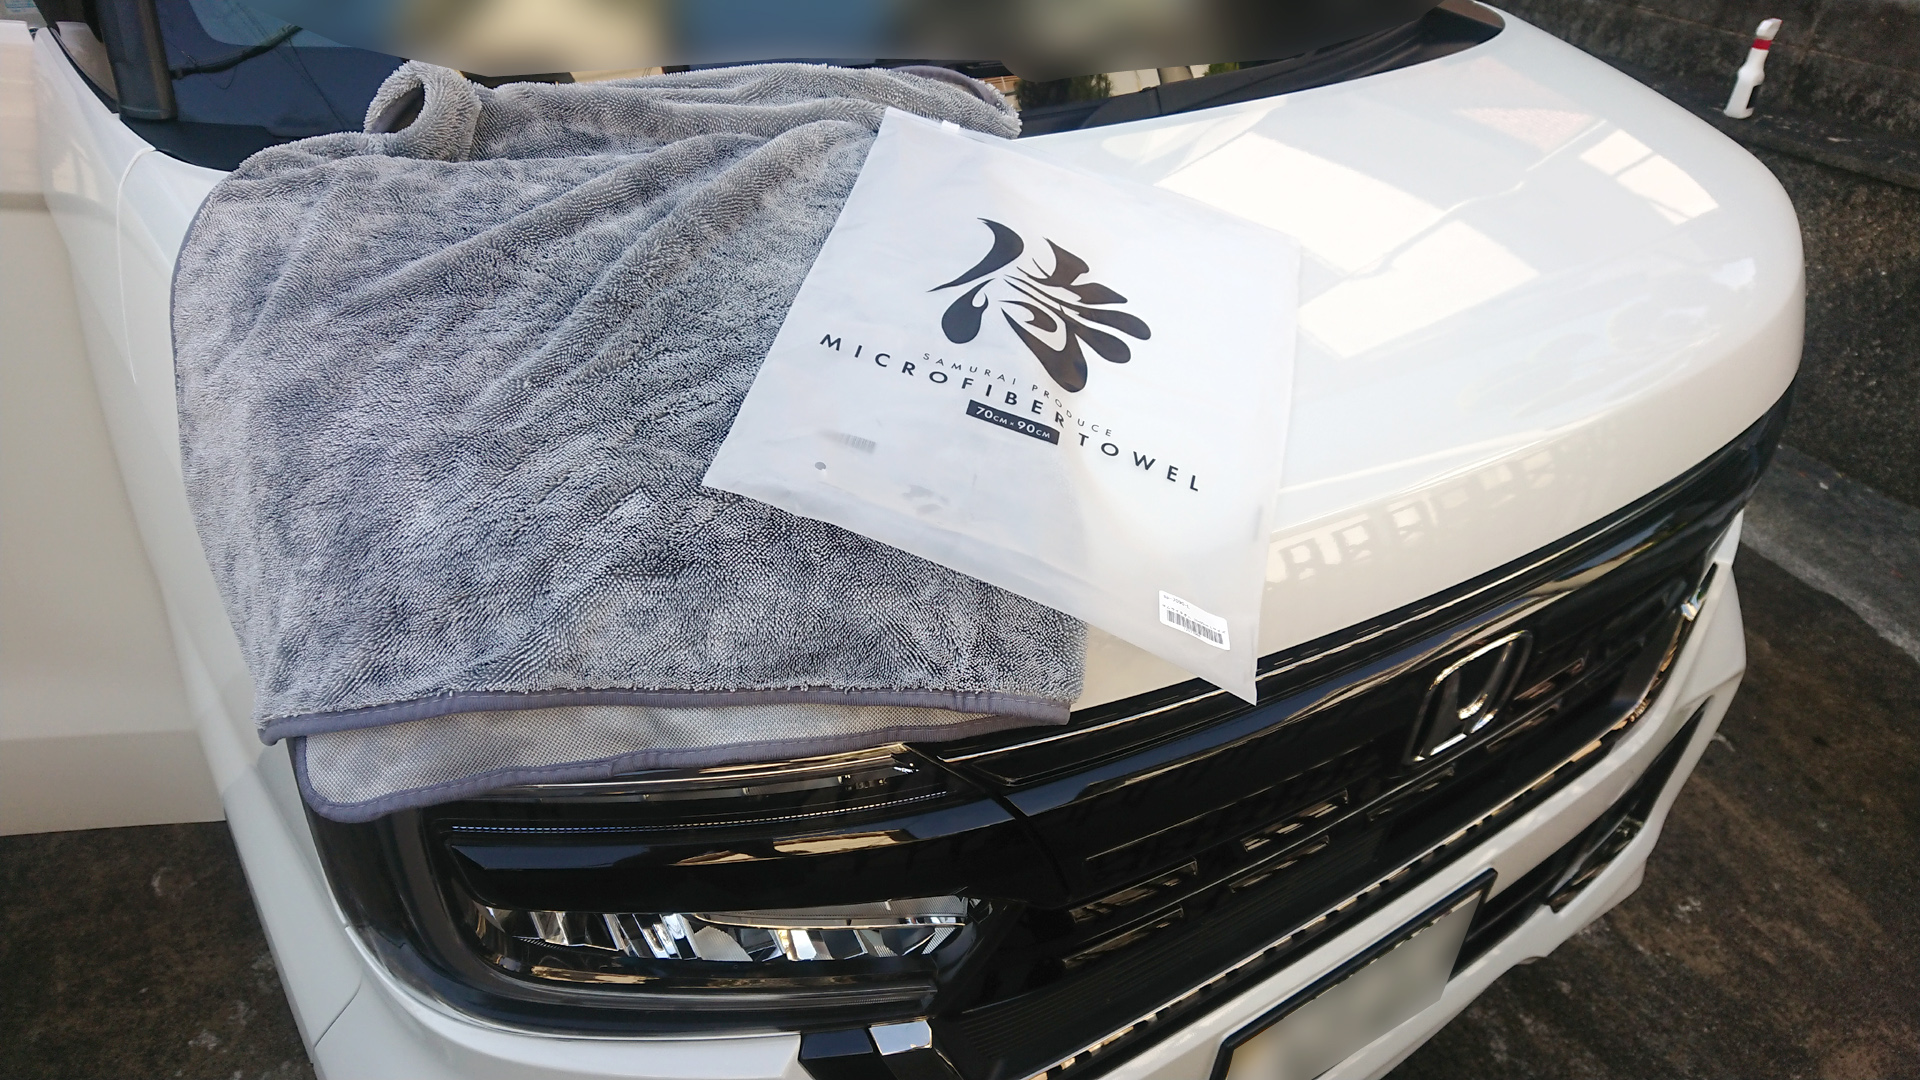 HONDA N-BOX 特別仕様車 洗車時の拭き取りに「サムライプロデュースのマイクロファイバータオル」を使ってみました。 | momotaro  blog